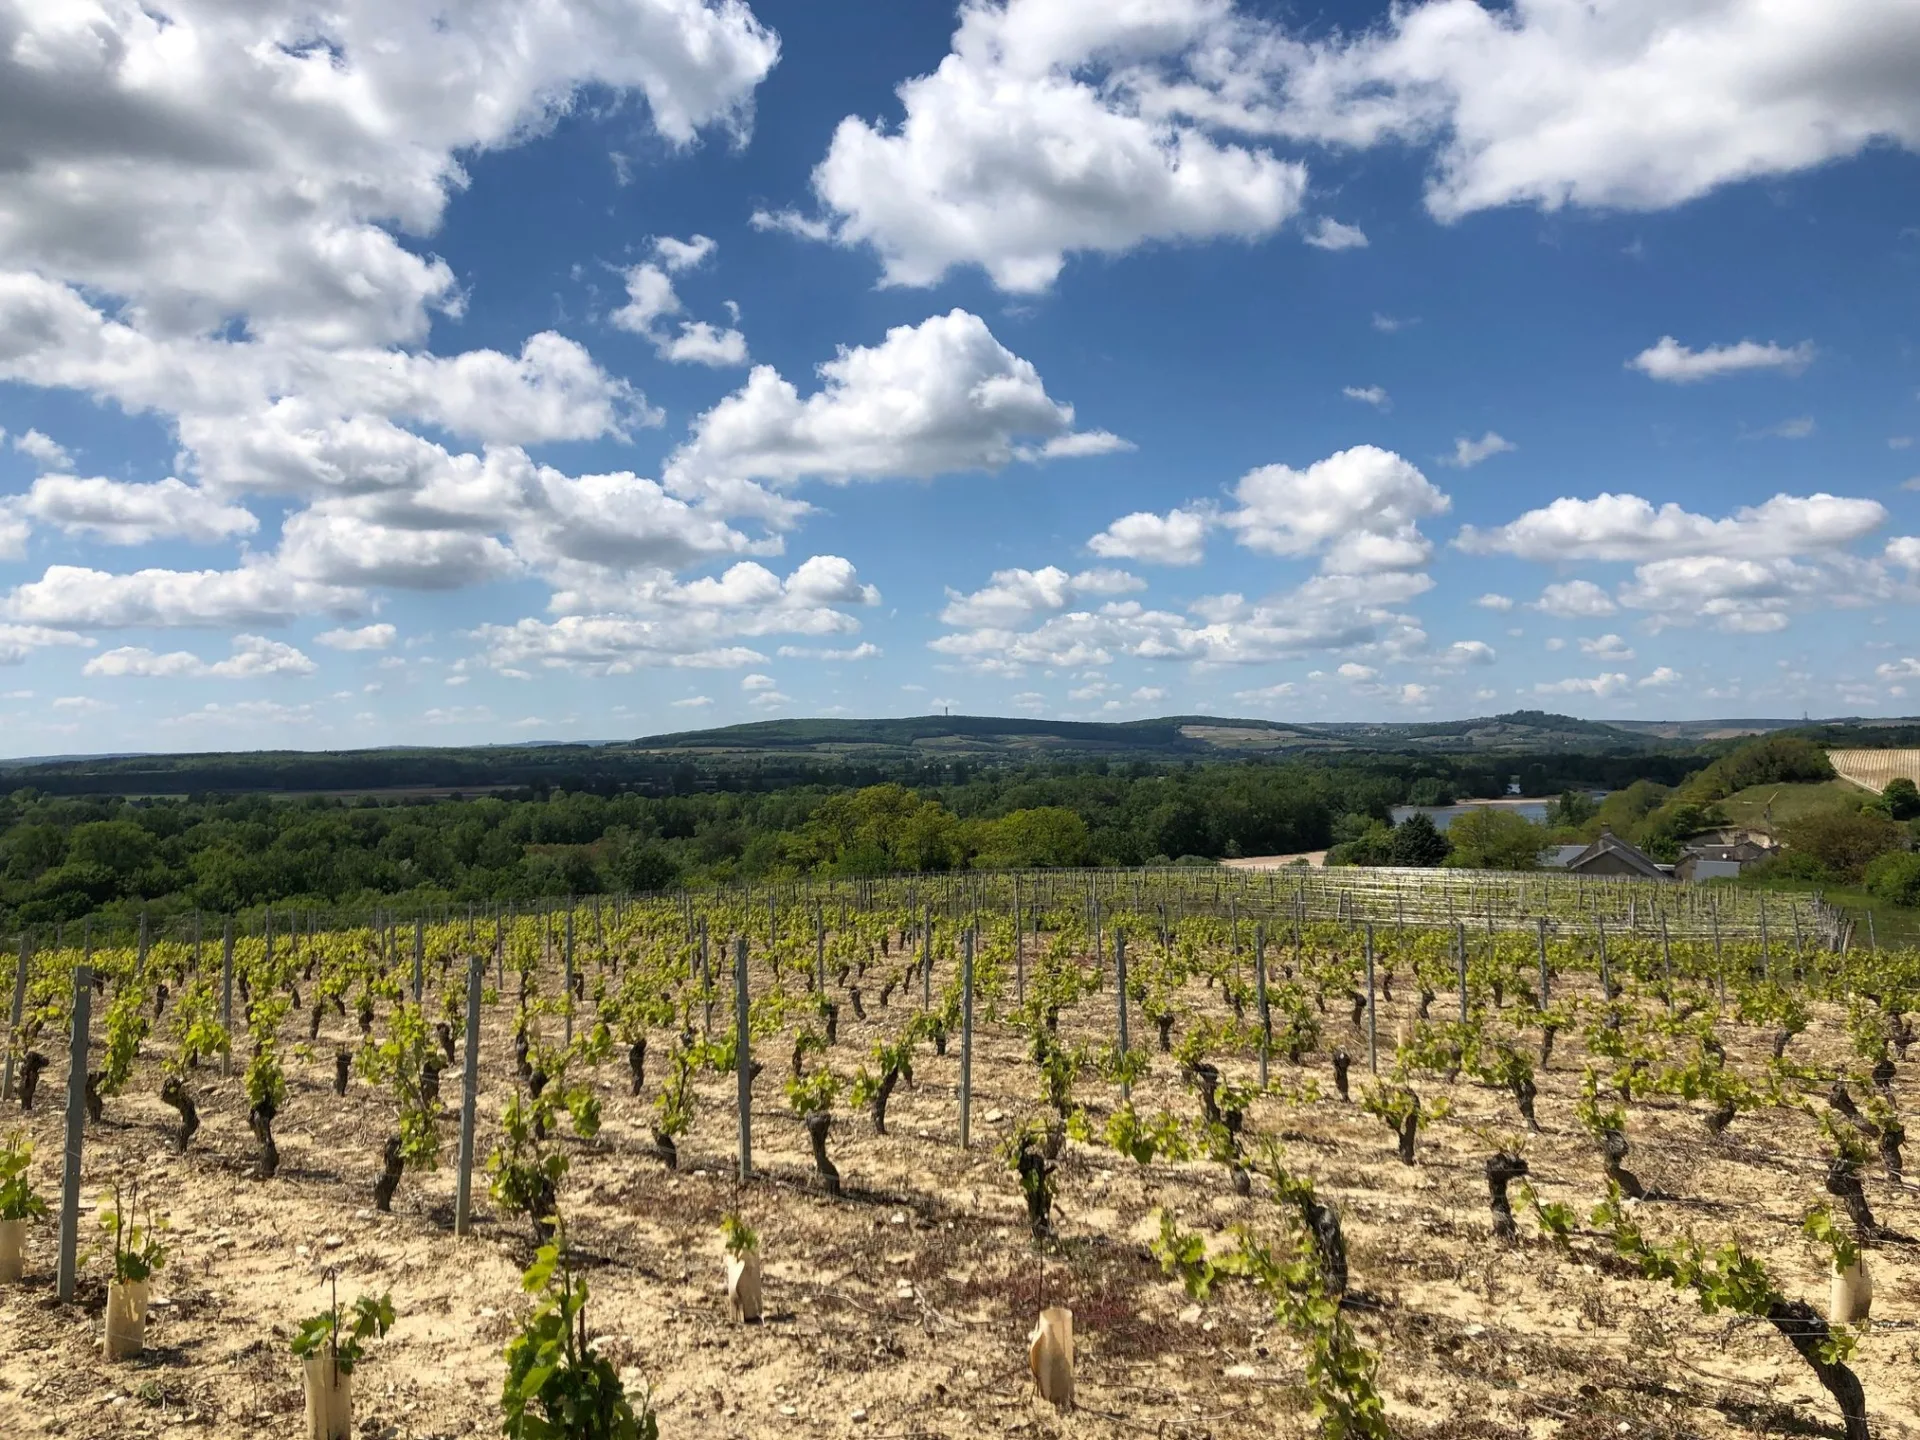 The wine landscapes of Nièvre